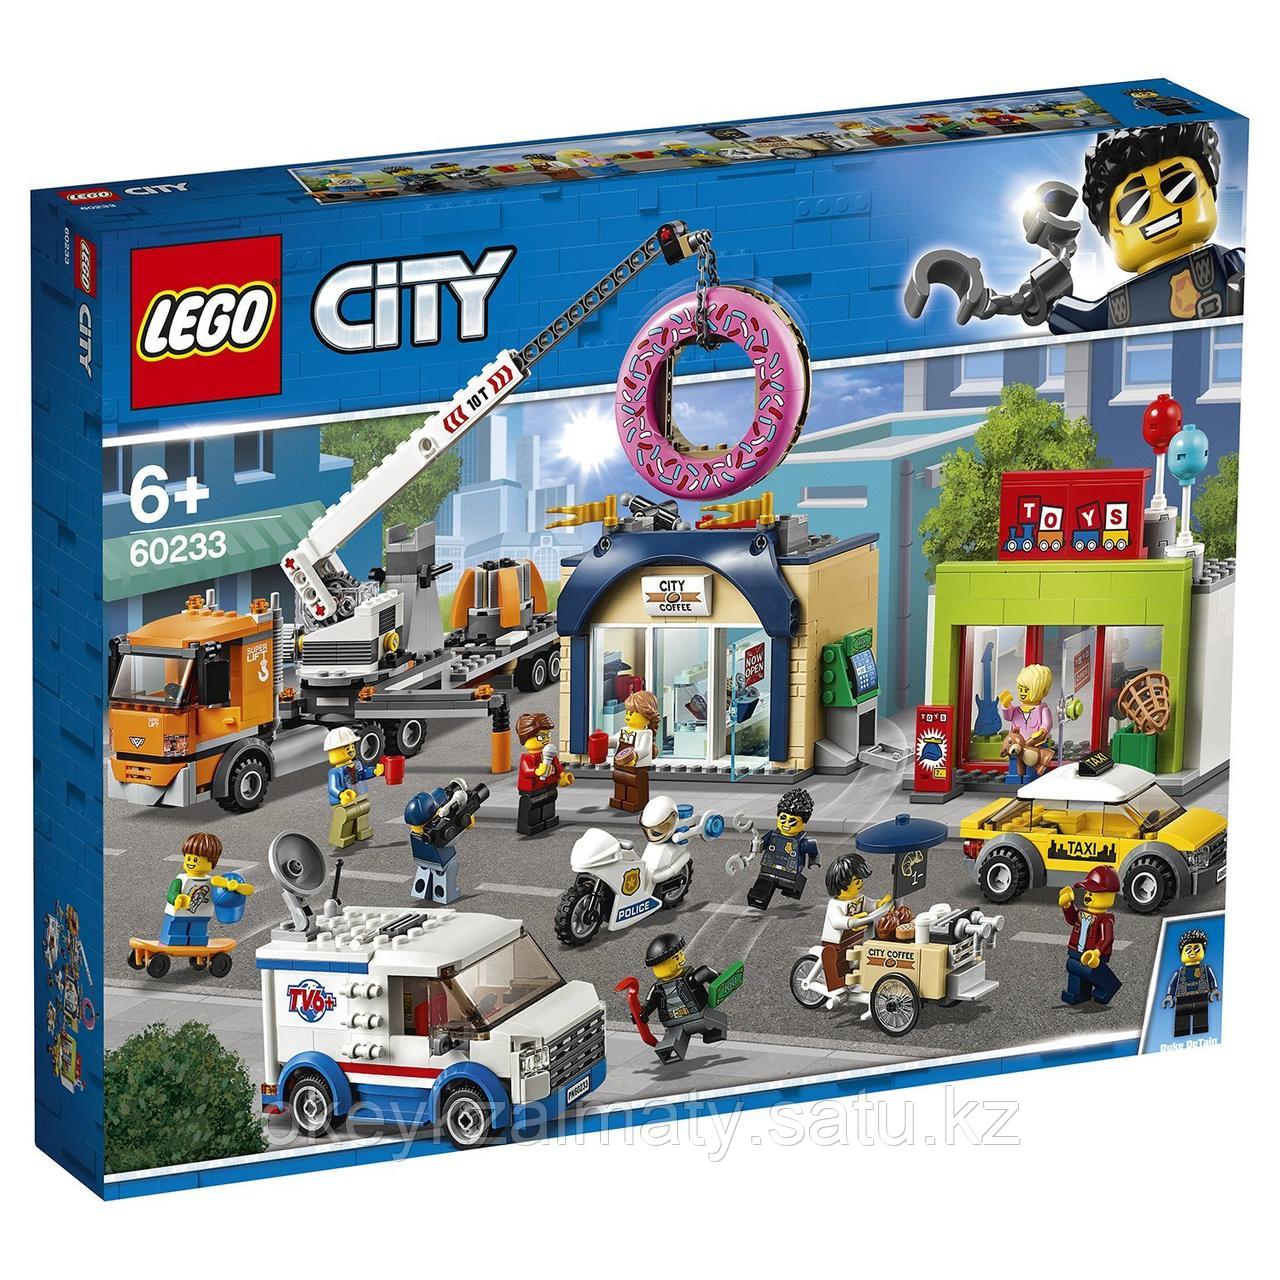 LEGO City: Открытие магазина по продаже пончиков 60233